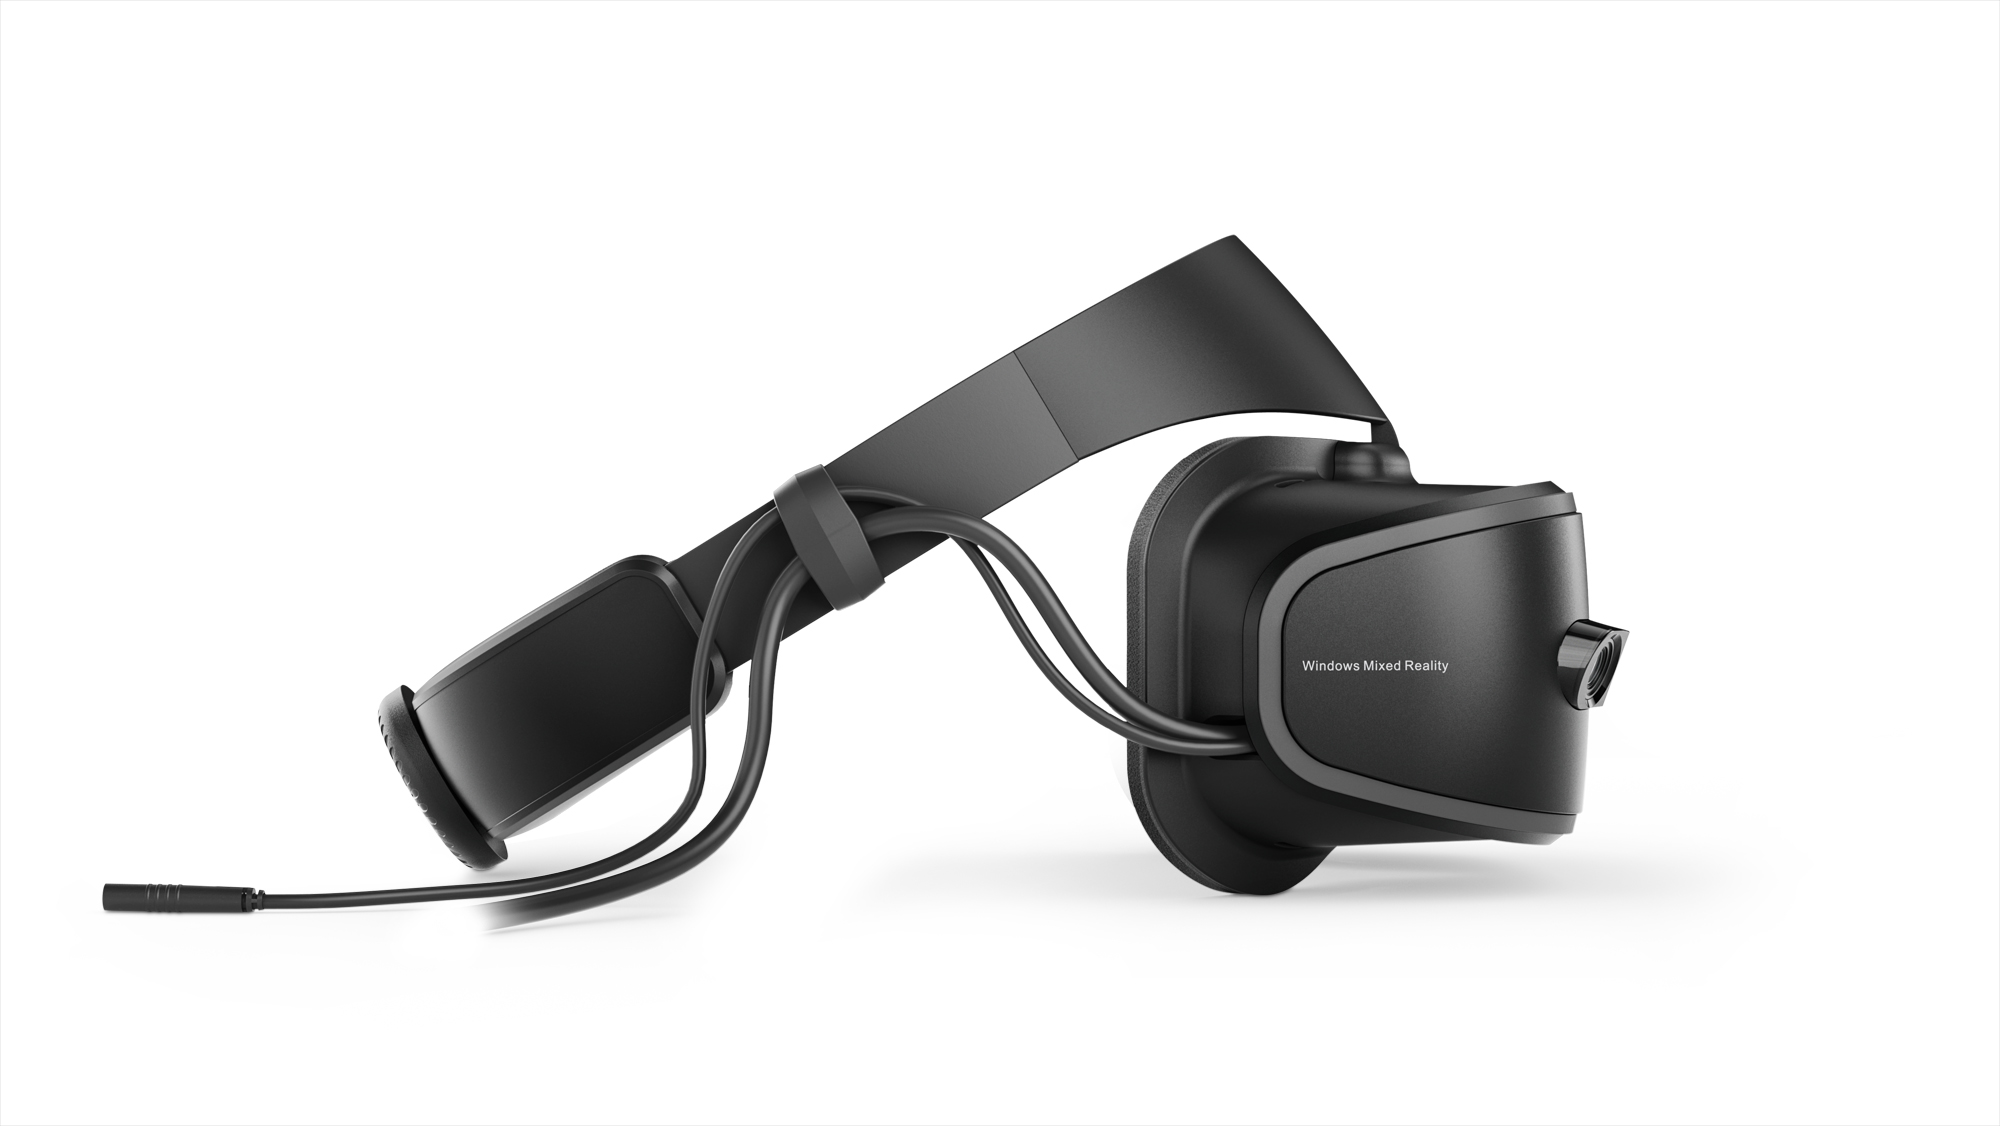 lenovo announces explorer windows mixed reality headset 04 prada tour left side profile